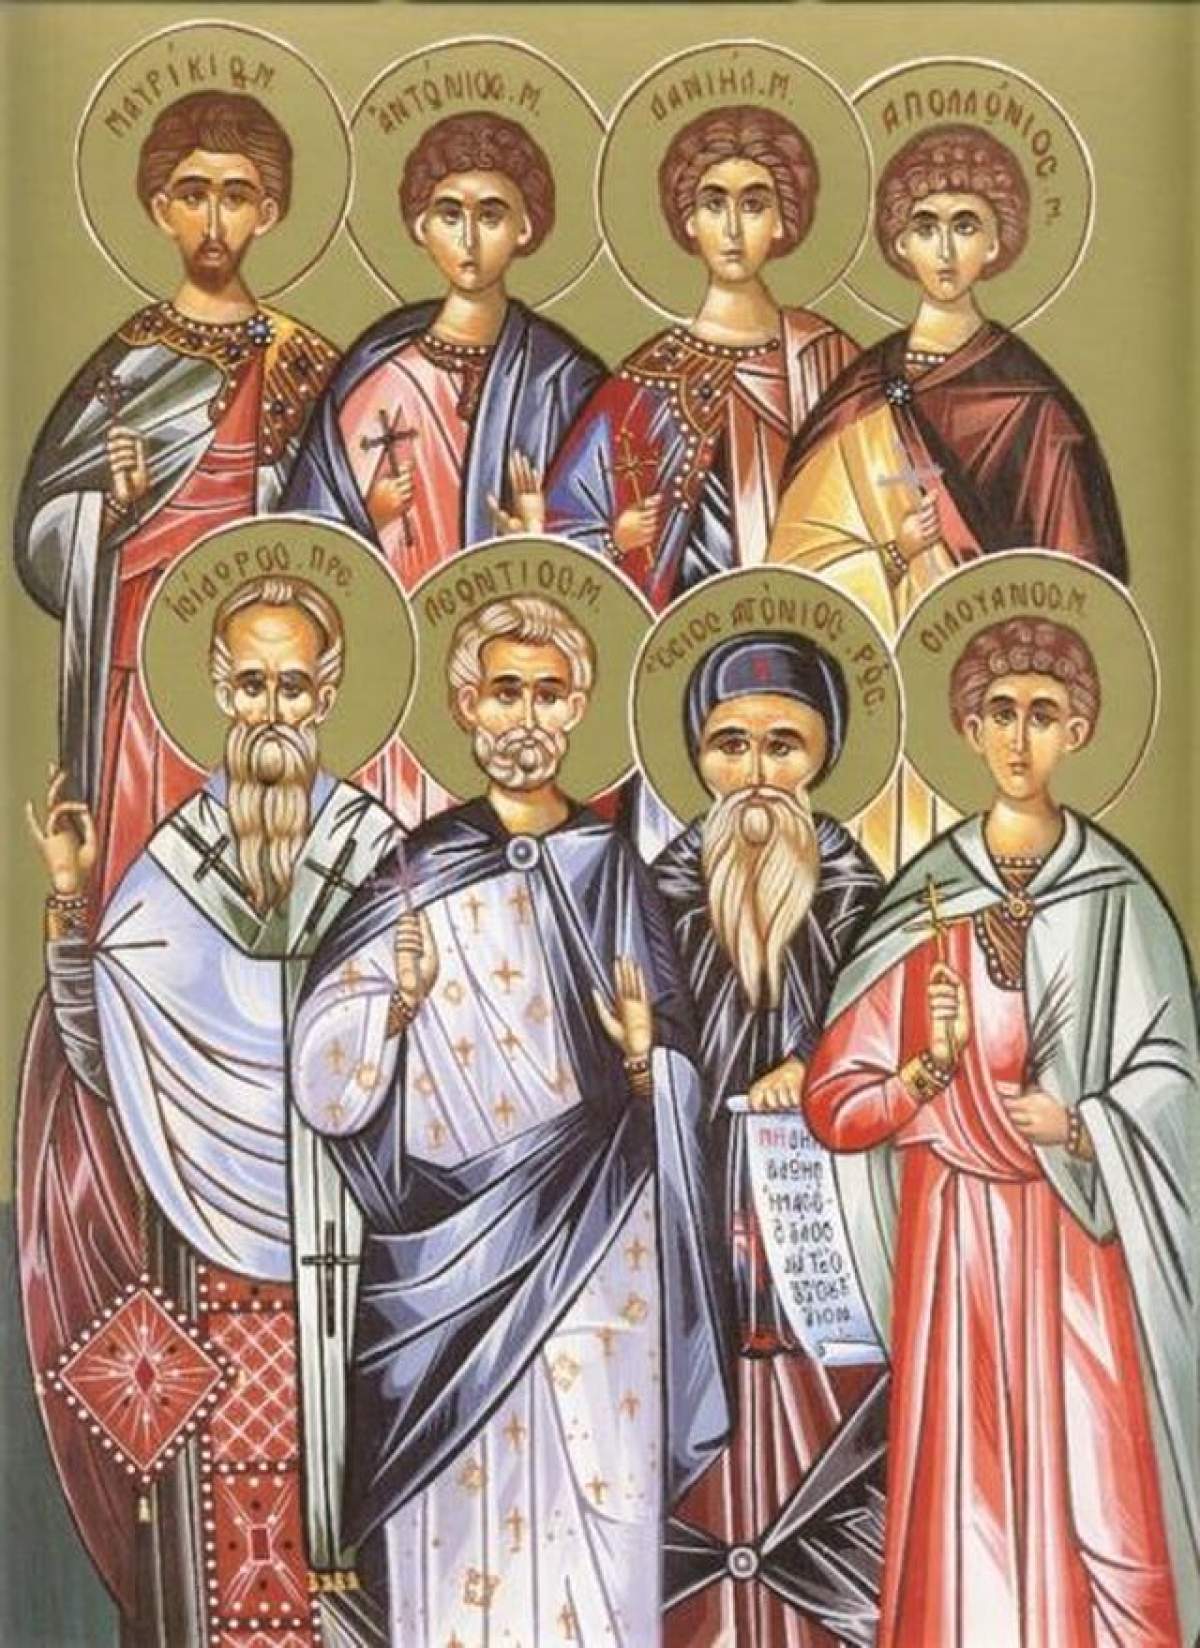 Sărbătoare în calendarul creştin ortodox! Sfinţii sacrificaţi în mod barbar